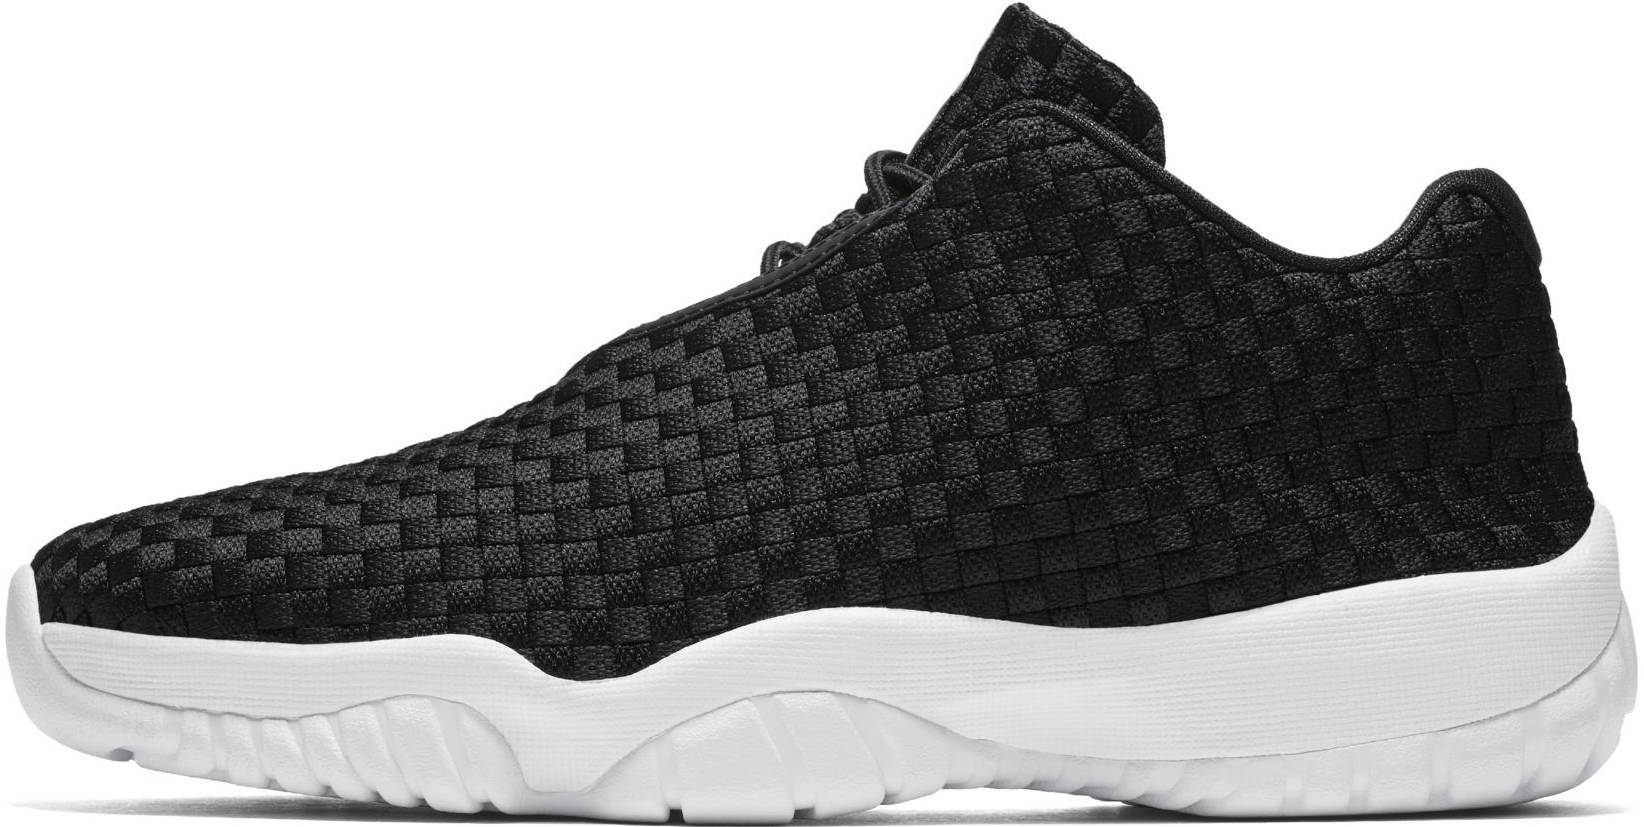 Save 43% on Black Jordan Sneakers (30 